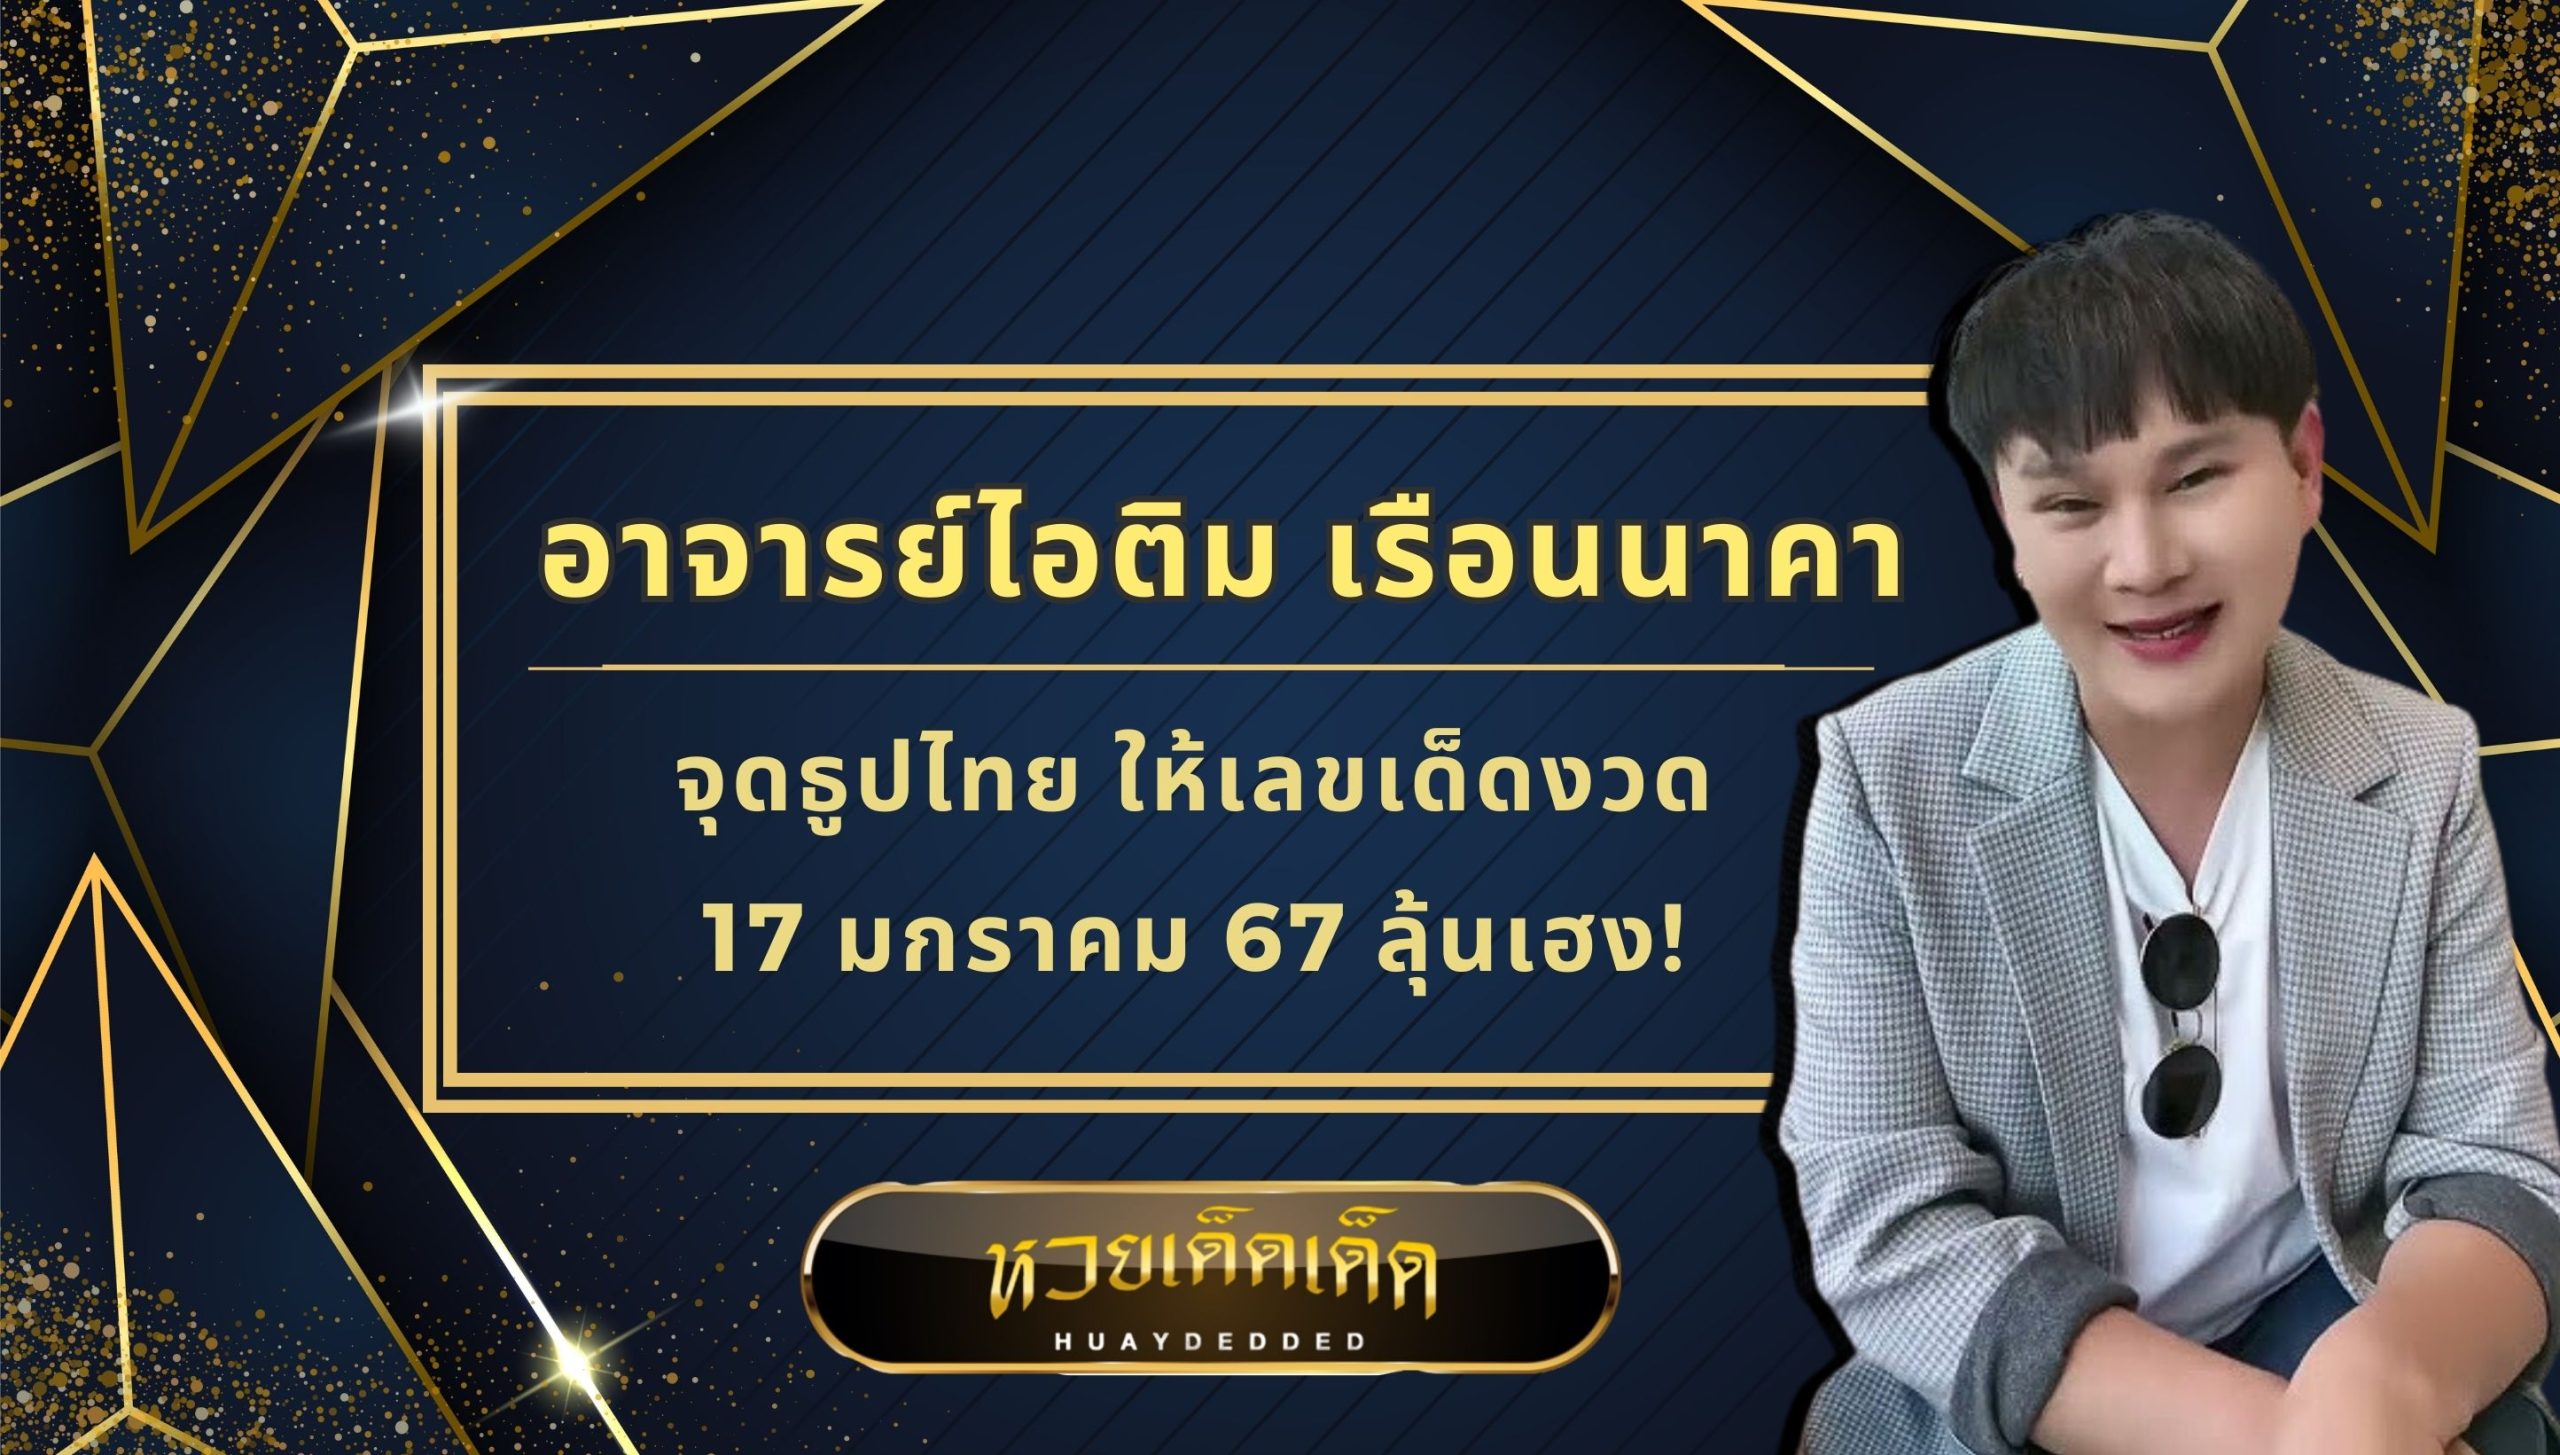 อาจารย์ไอติม จุดธูปไทย เผยเลขเด็ด 17 มกราคม 67 ลุ้นเฮง!